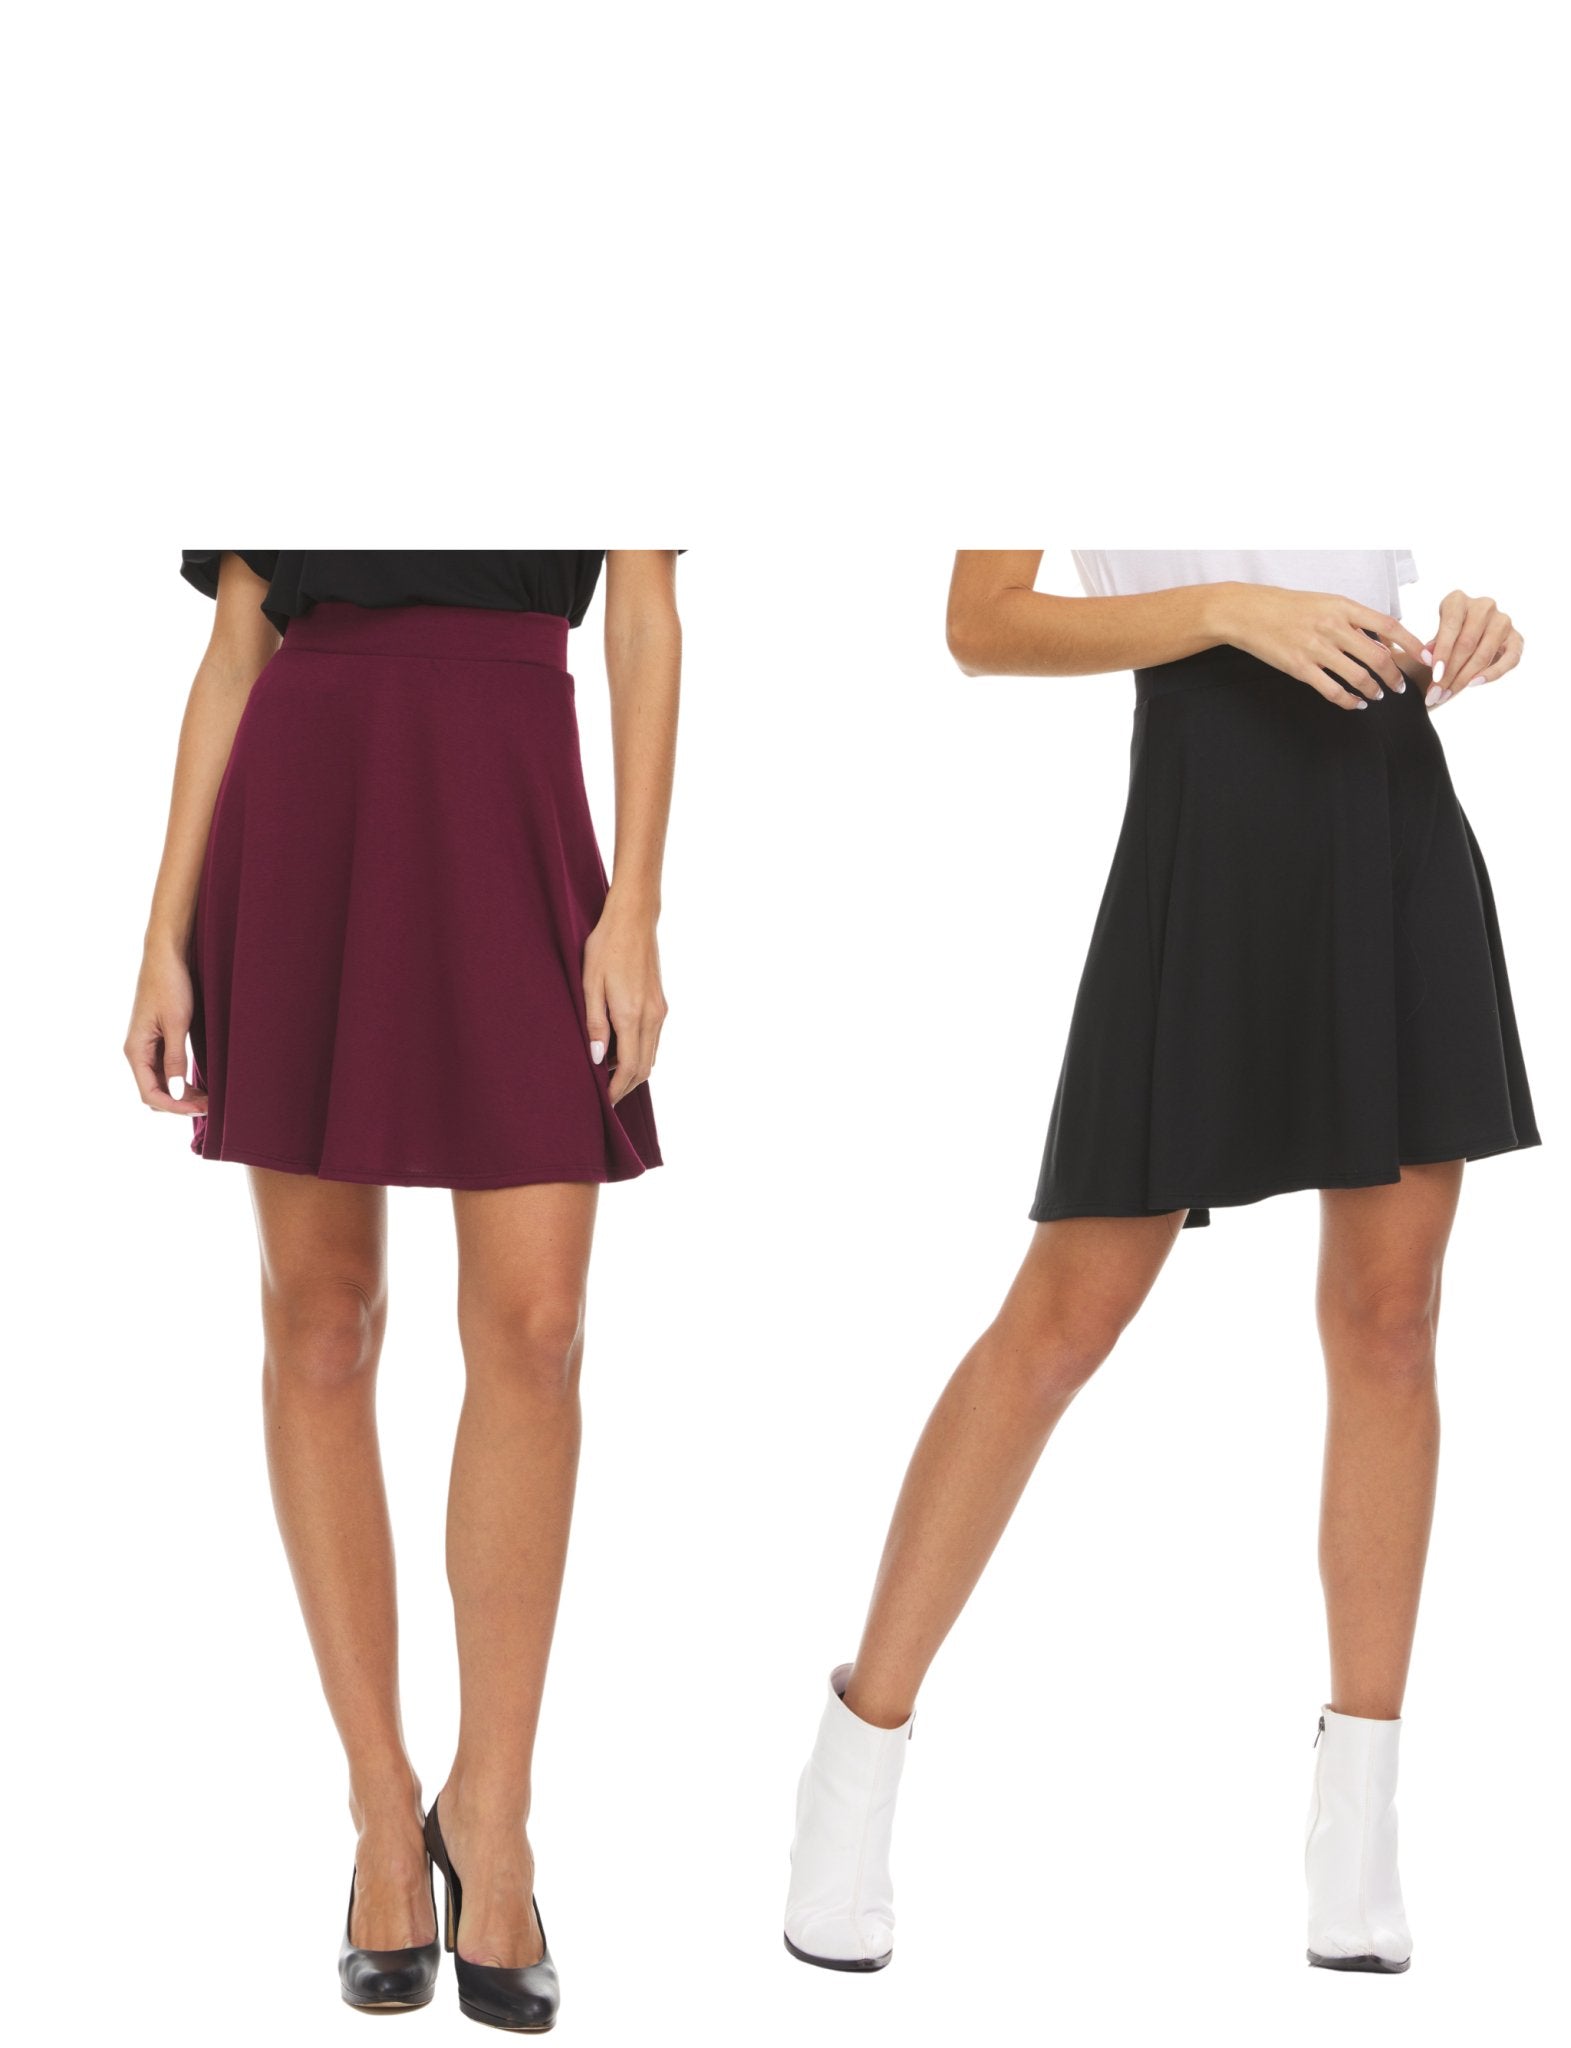 Basic Skater Skirt - 2 Piece Multi Pack - DressbarnSkirts